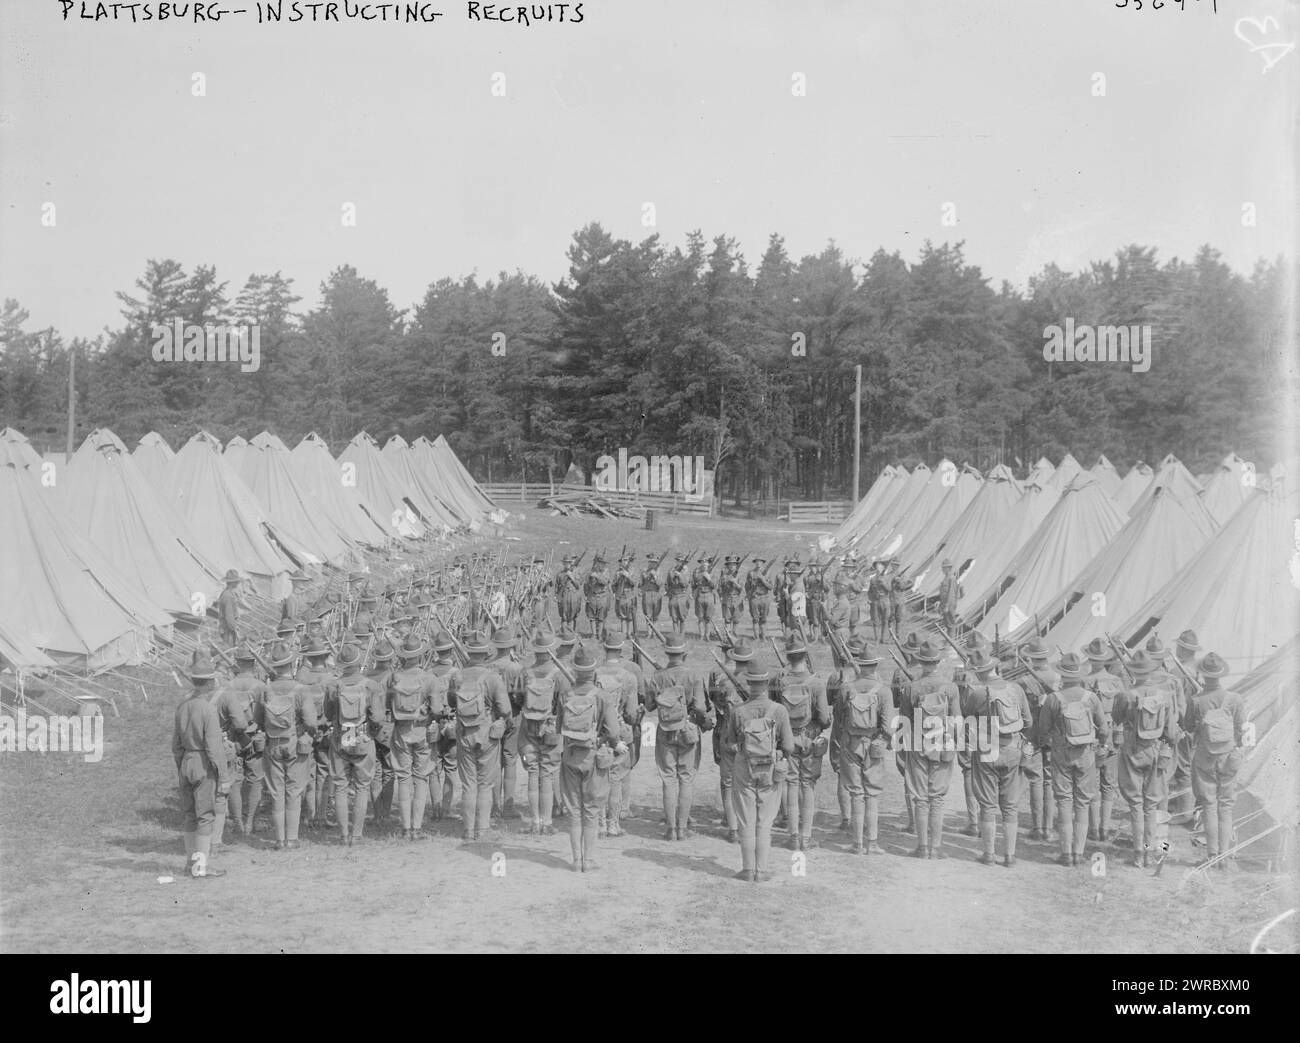 Plattsburg, Instructing recruits, between ca. 1910 and ca. 1915, Plattsburg, Glass negatives, 1 negative: glass Stock Photo